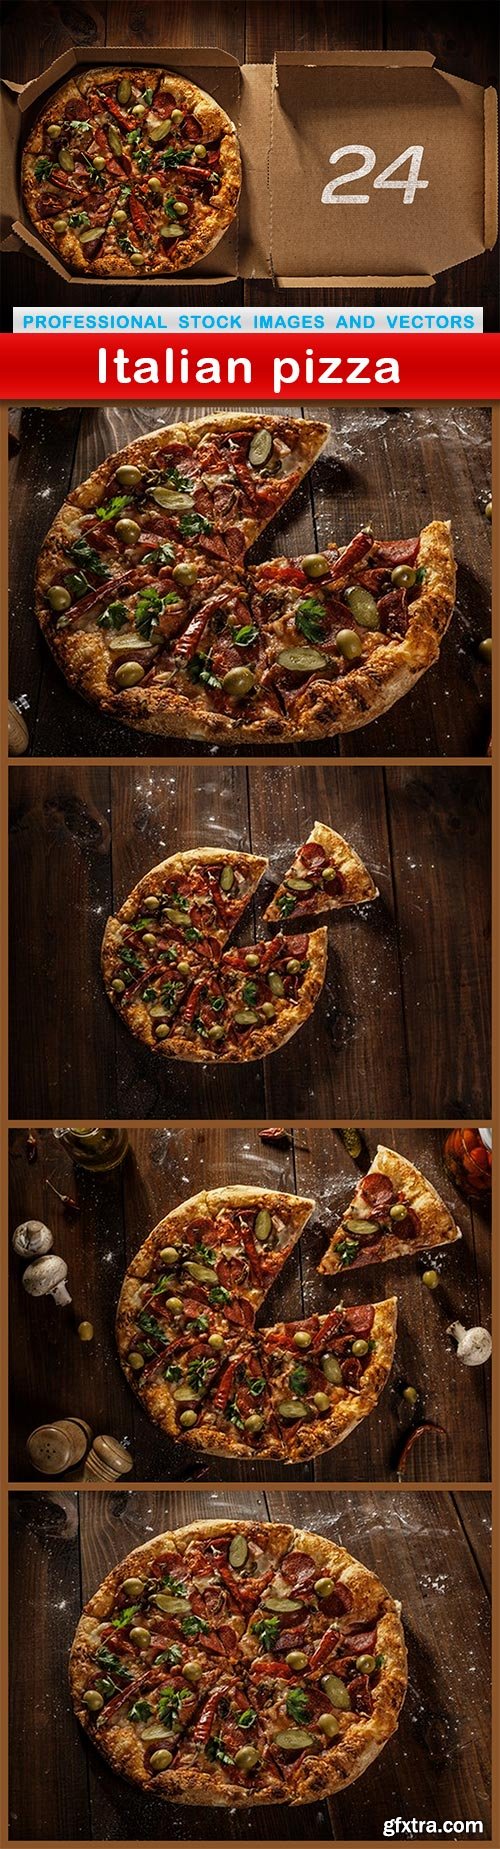 Italian pizza - 5 UHQ JPEG